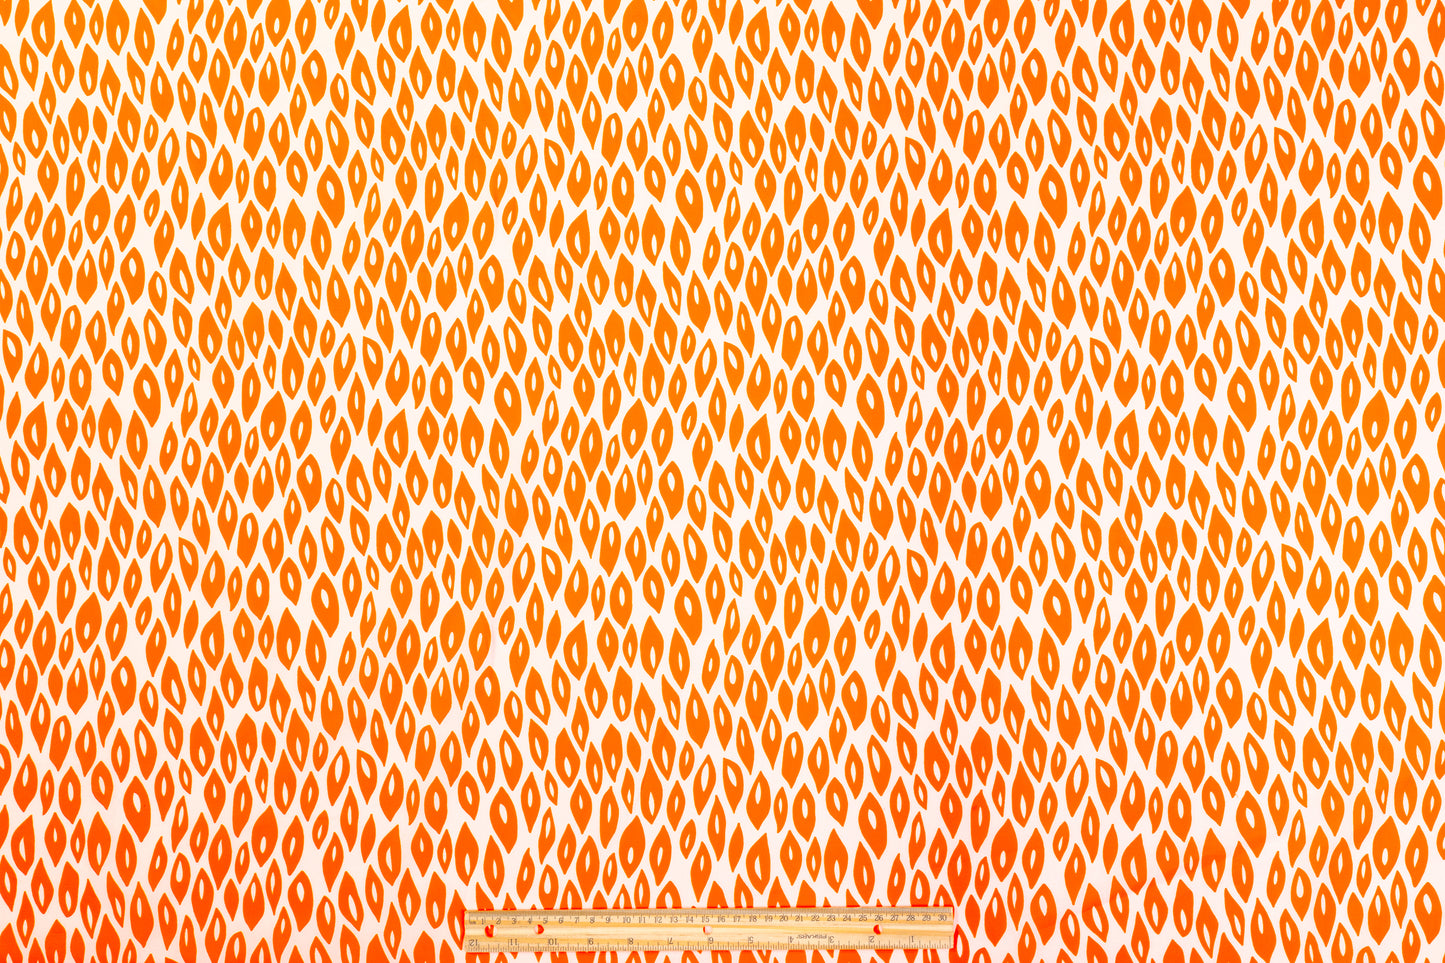 Teardrop Cotton Print - Orange and White